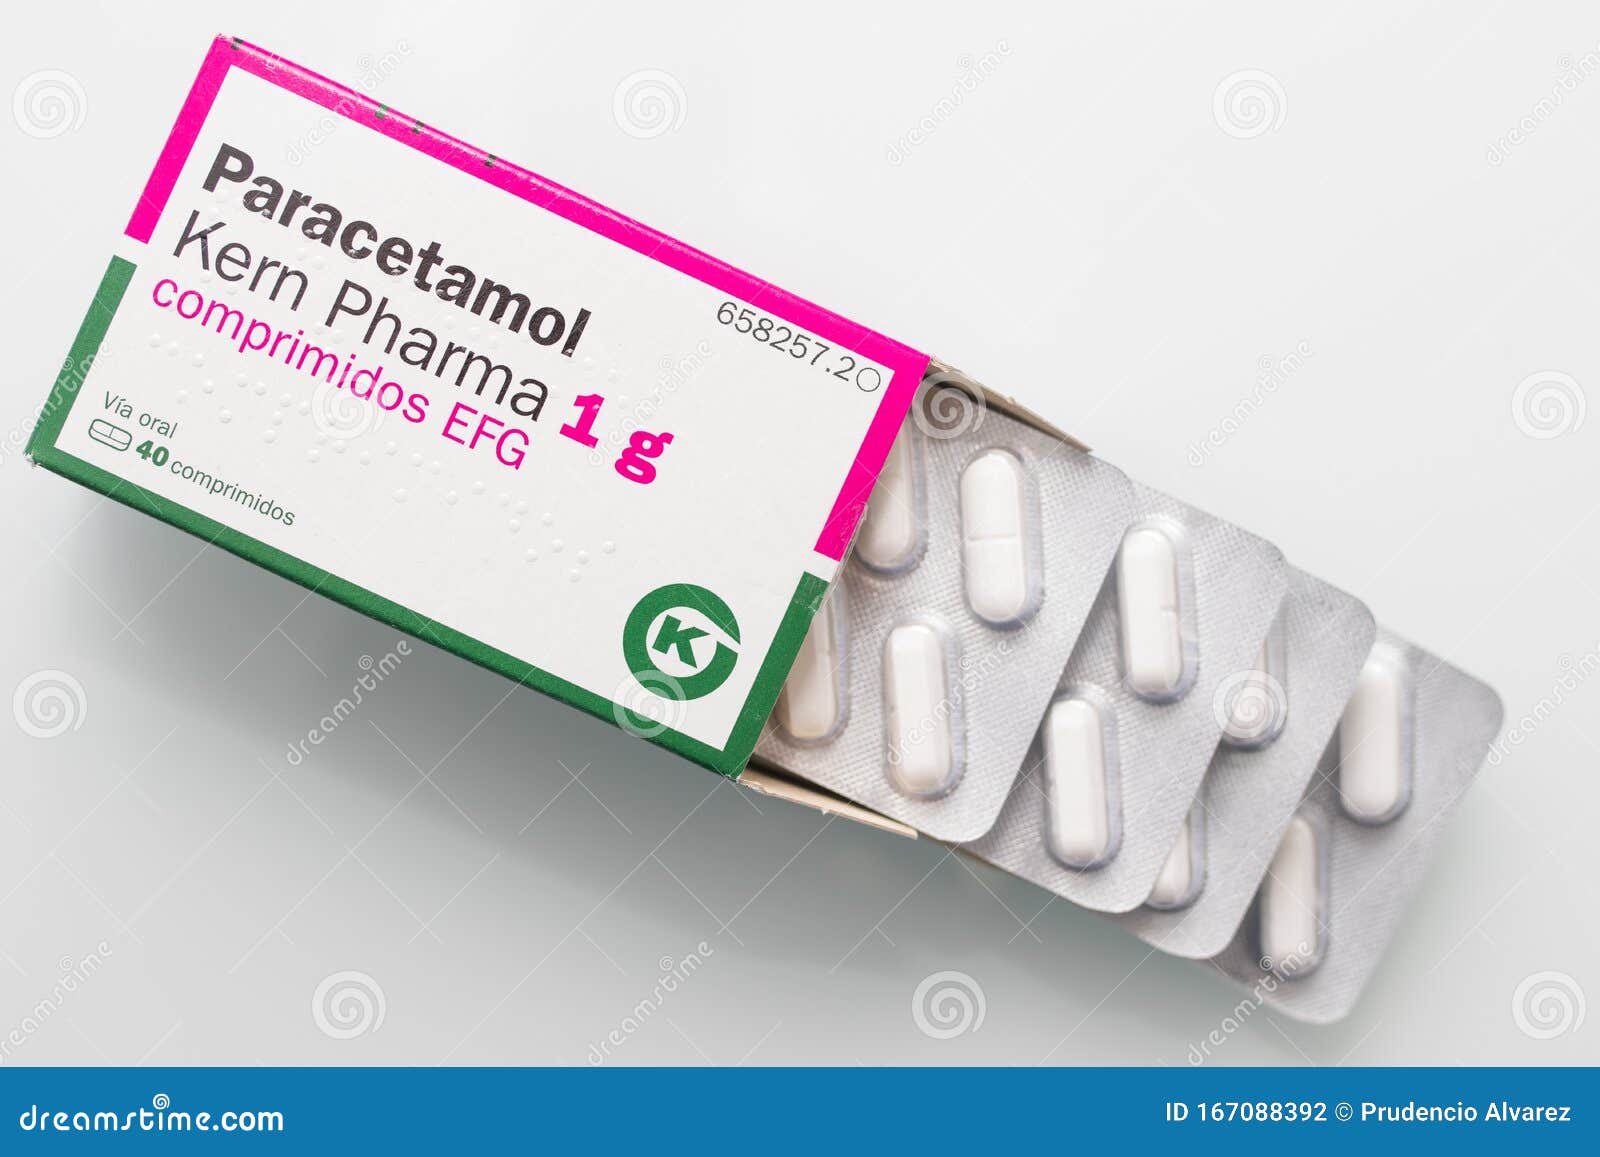 Se puede tomar paracetamol sin comer